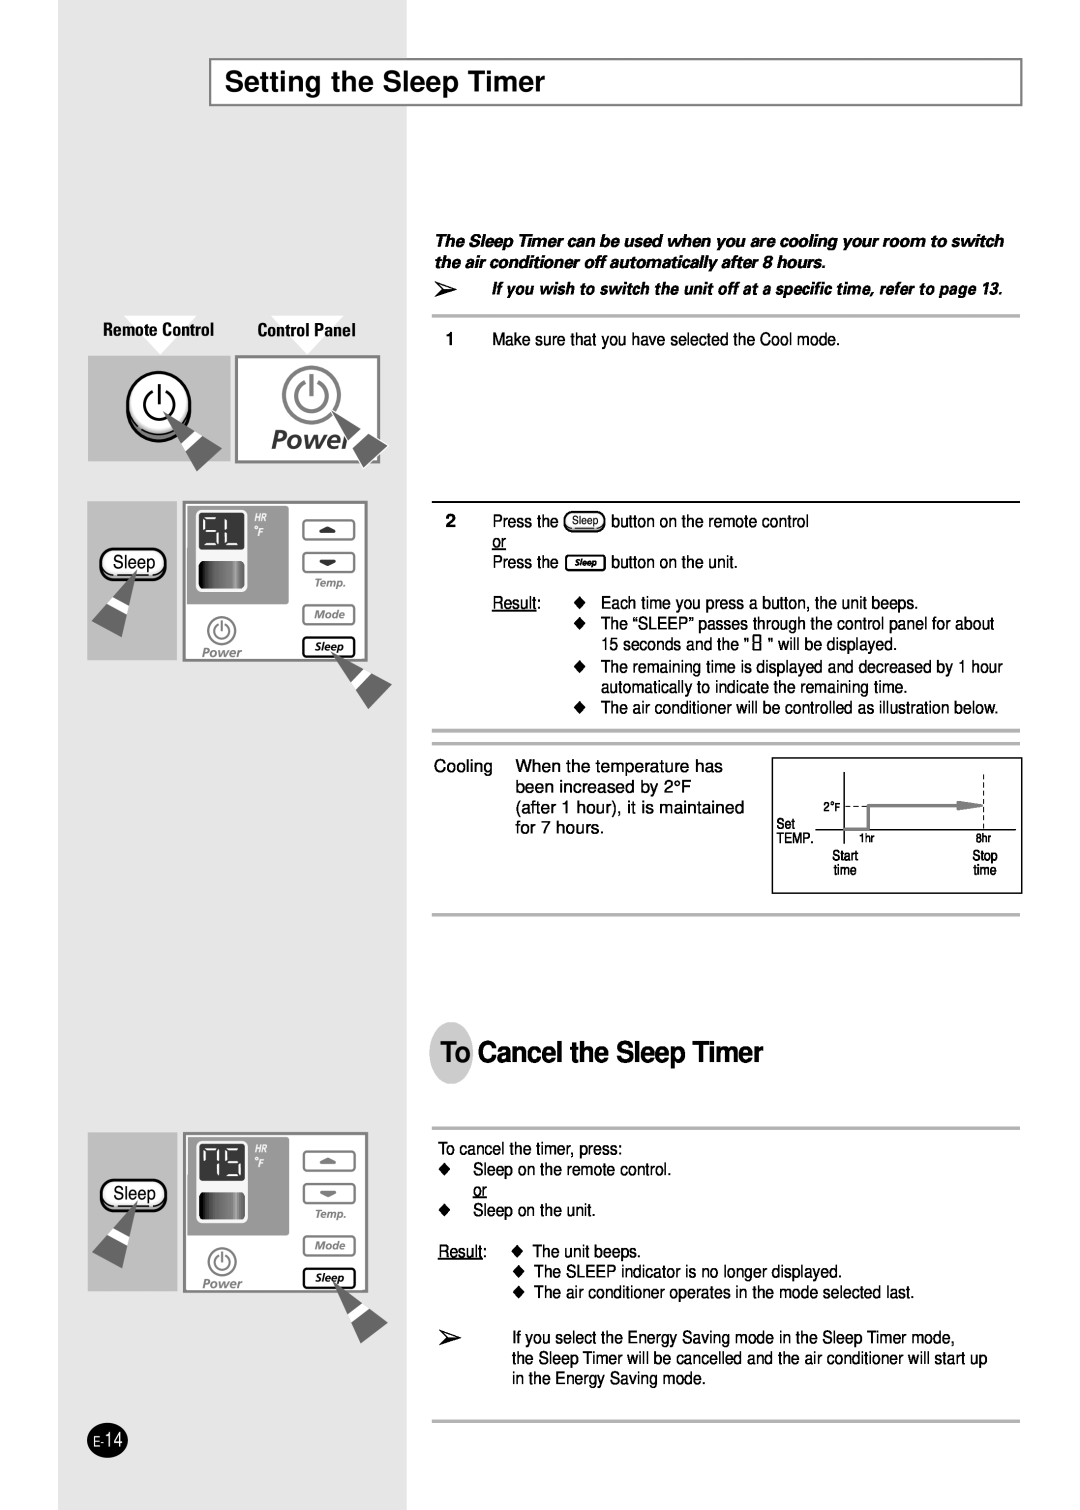 Samsung AW0501B manual Setting the Sleep Timer, To Cancel the Sleep Timer, Remote Control, Control Panel 